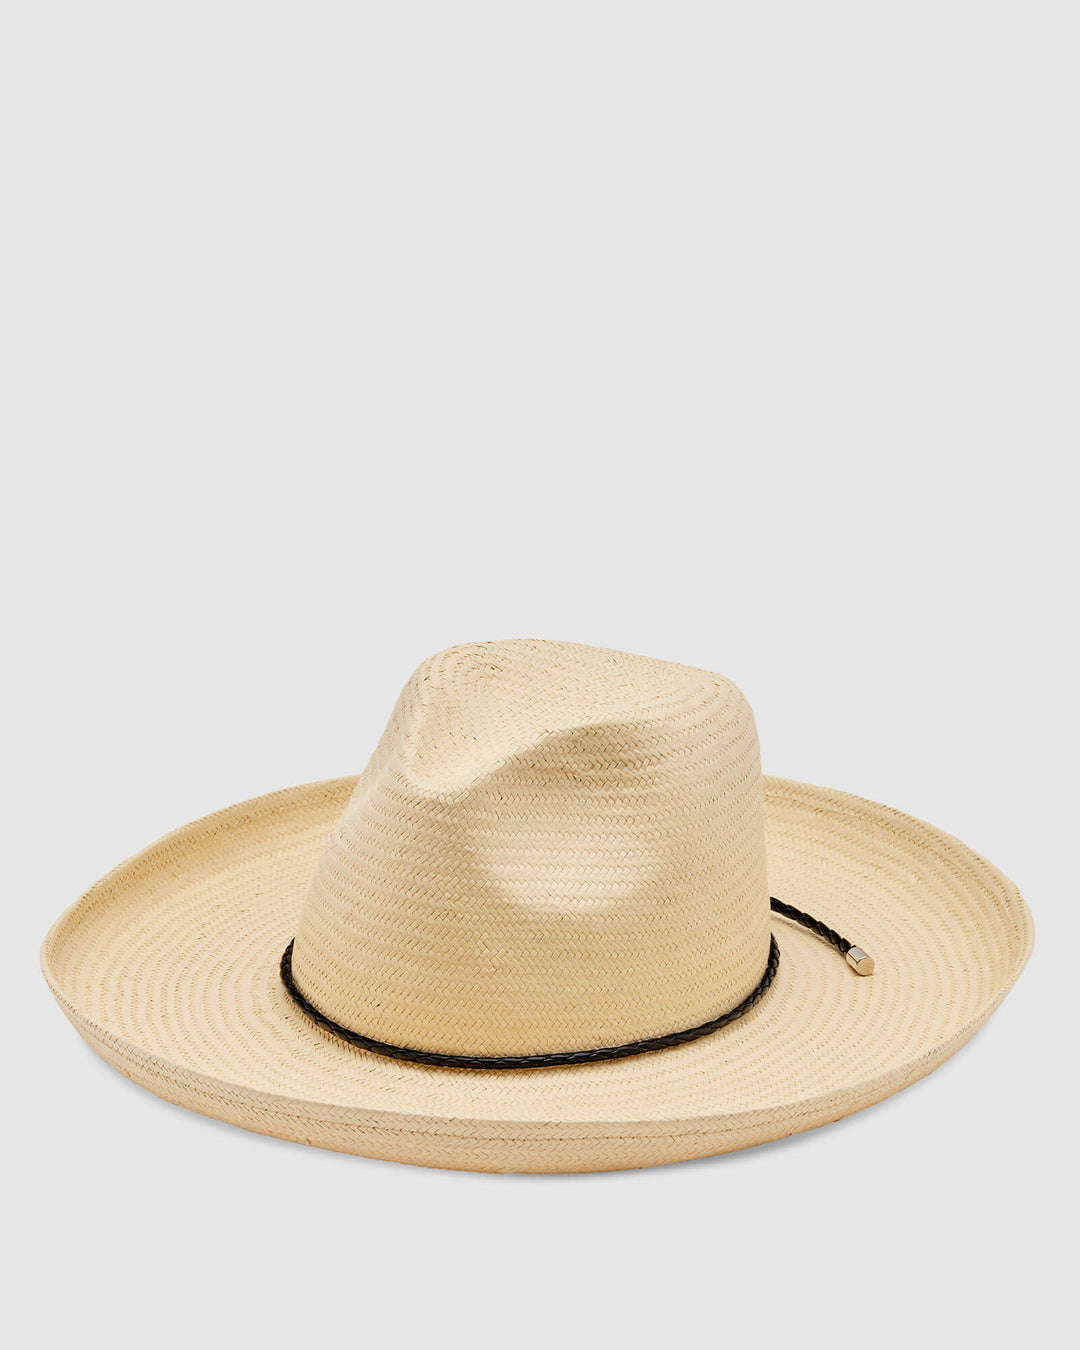 Cancun Hats